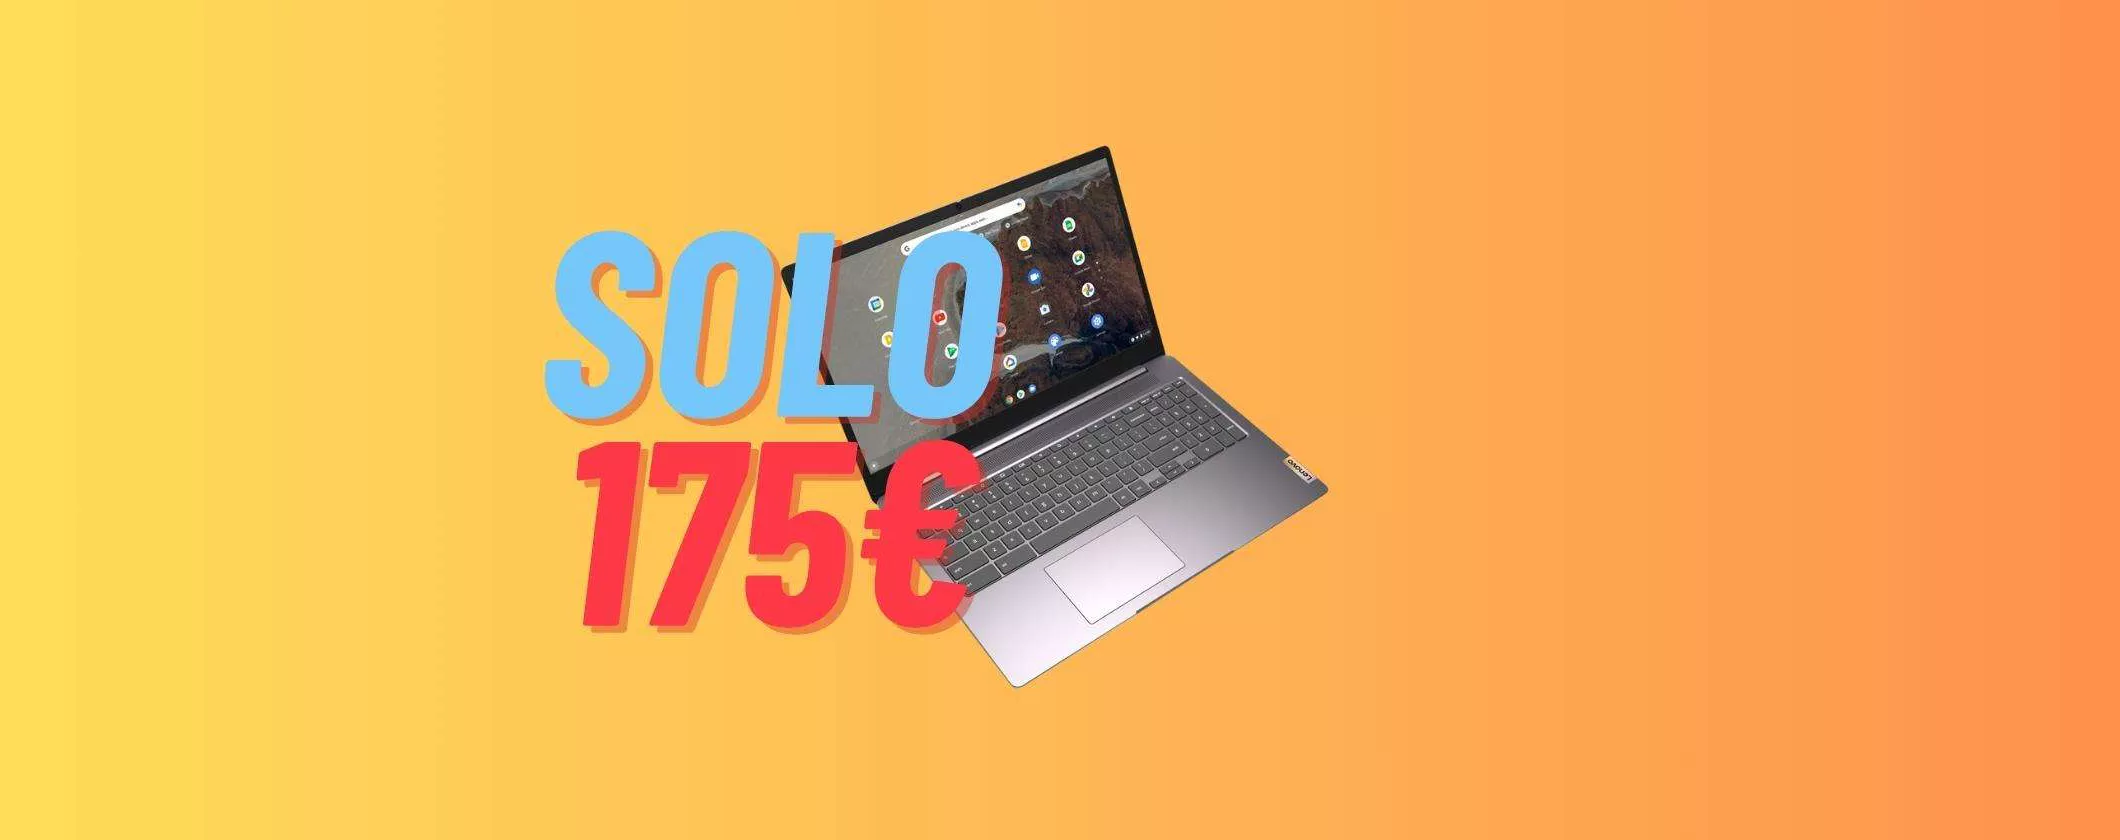 Lenovo IdeaPad 3 Chromebook a 175€: scopri come averlo